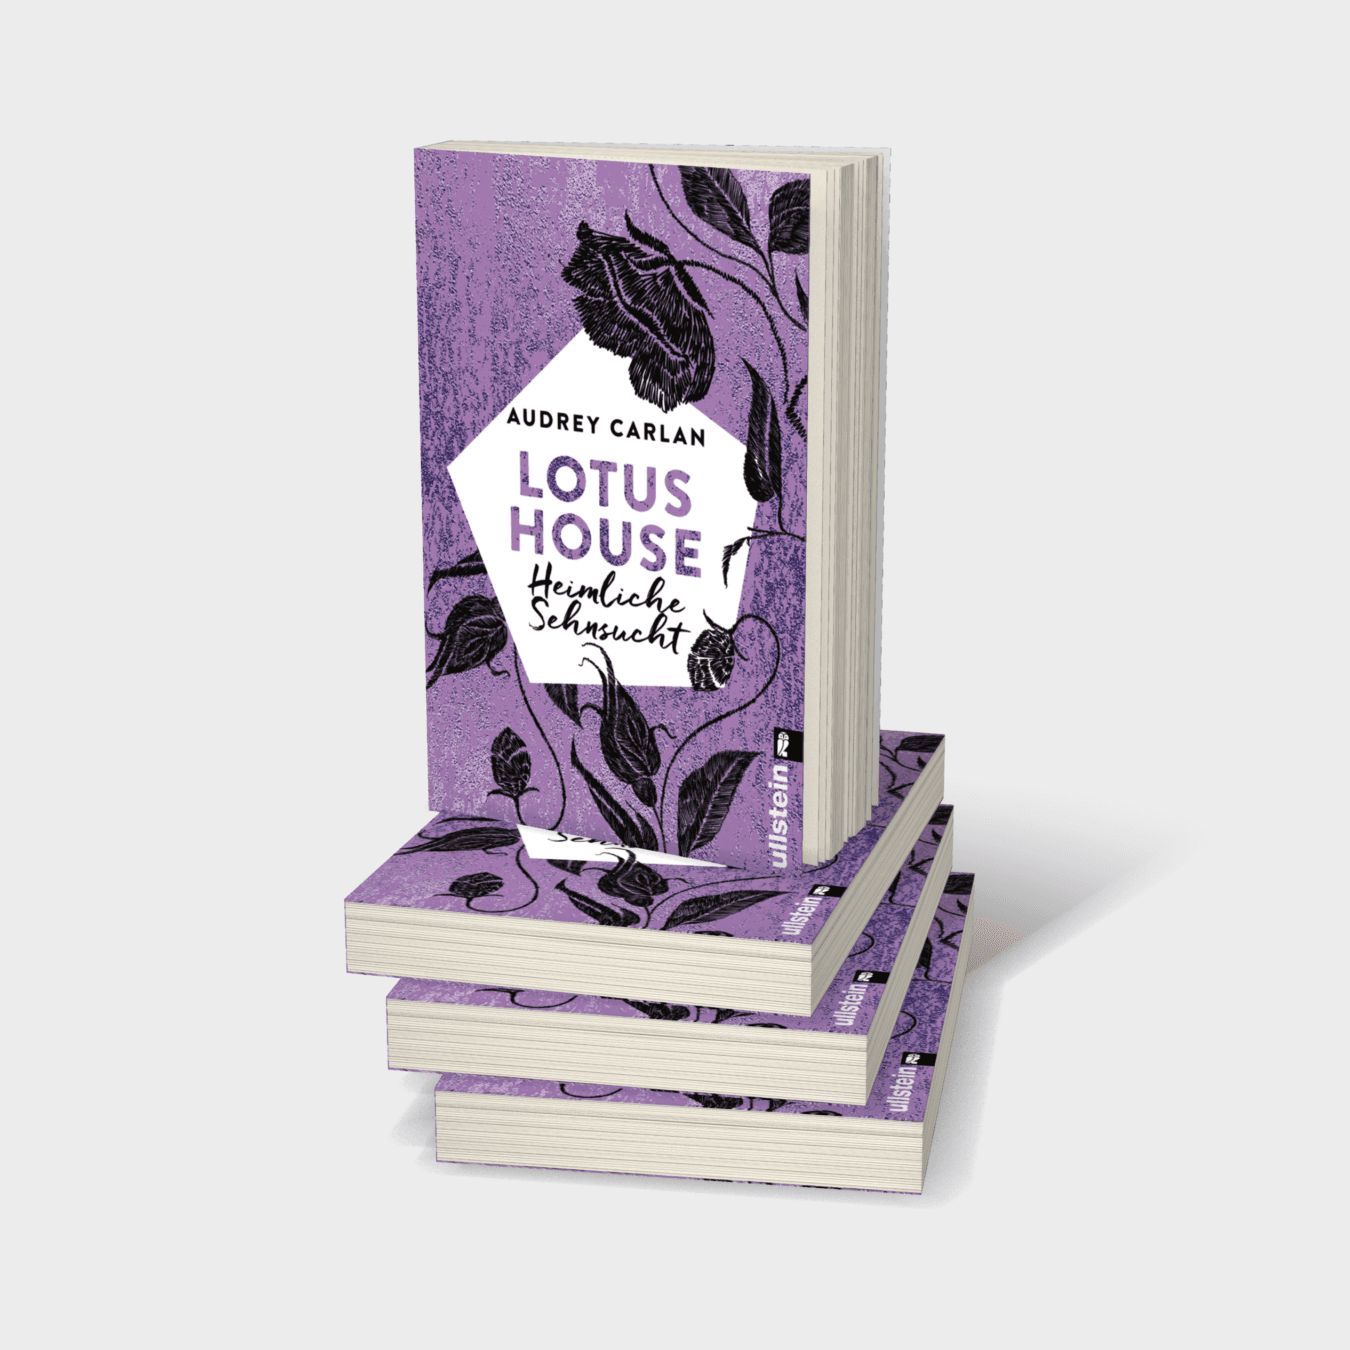 Buchcover von Lotus House - Heimliche Sehnsucht (Die Lotus House-Serie 6)